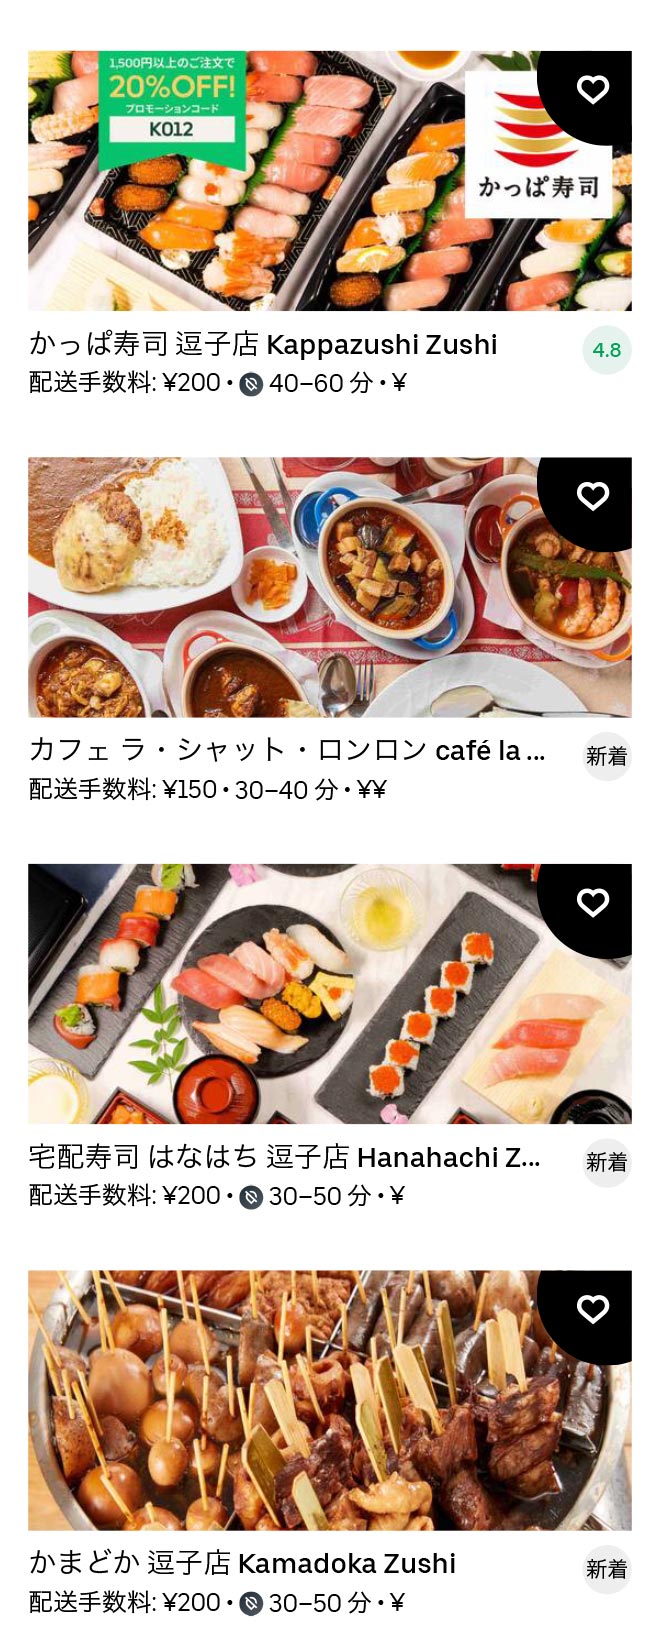 Zushi menu 2012 06